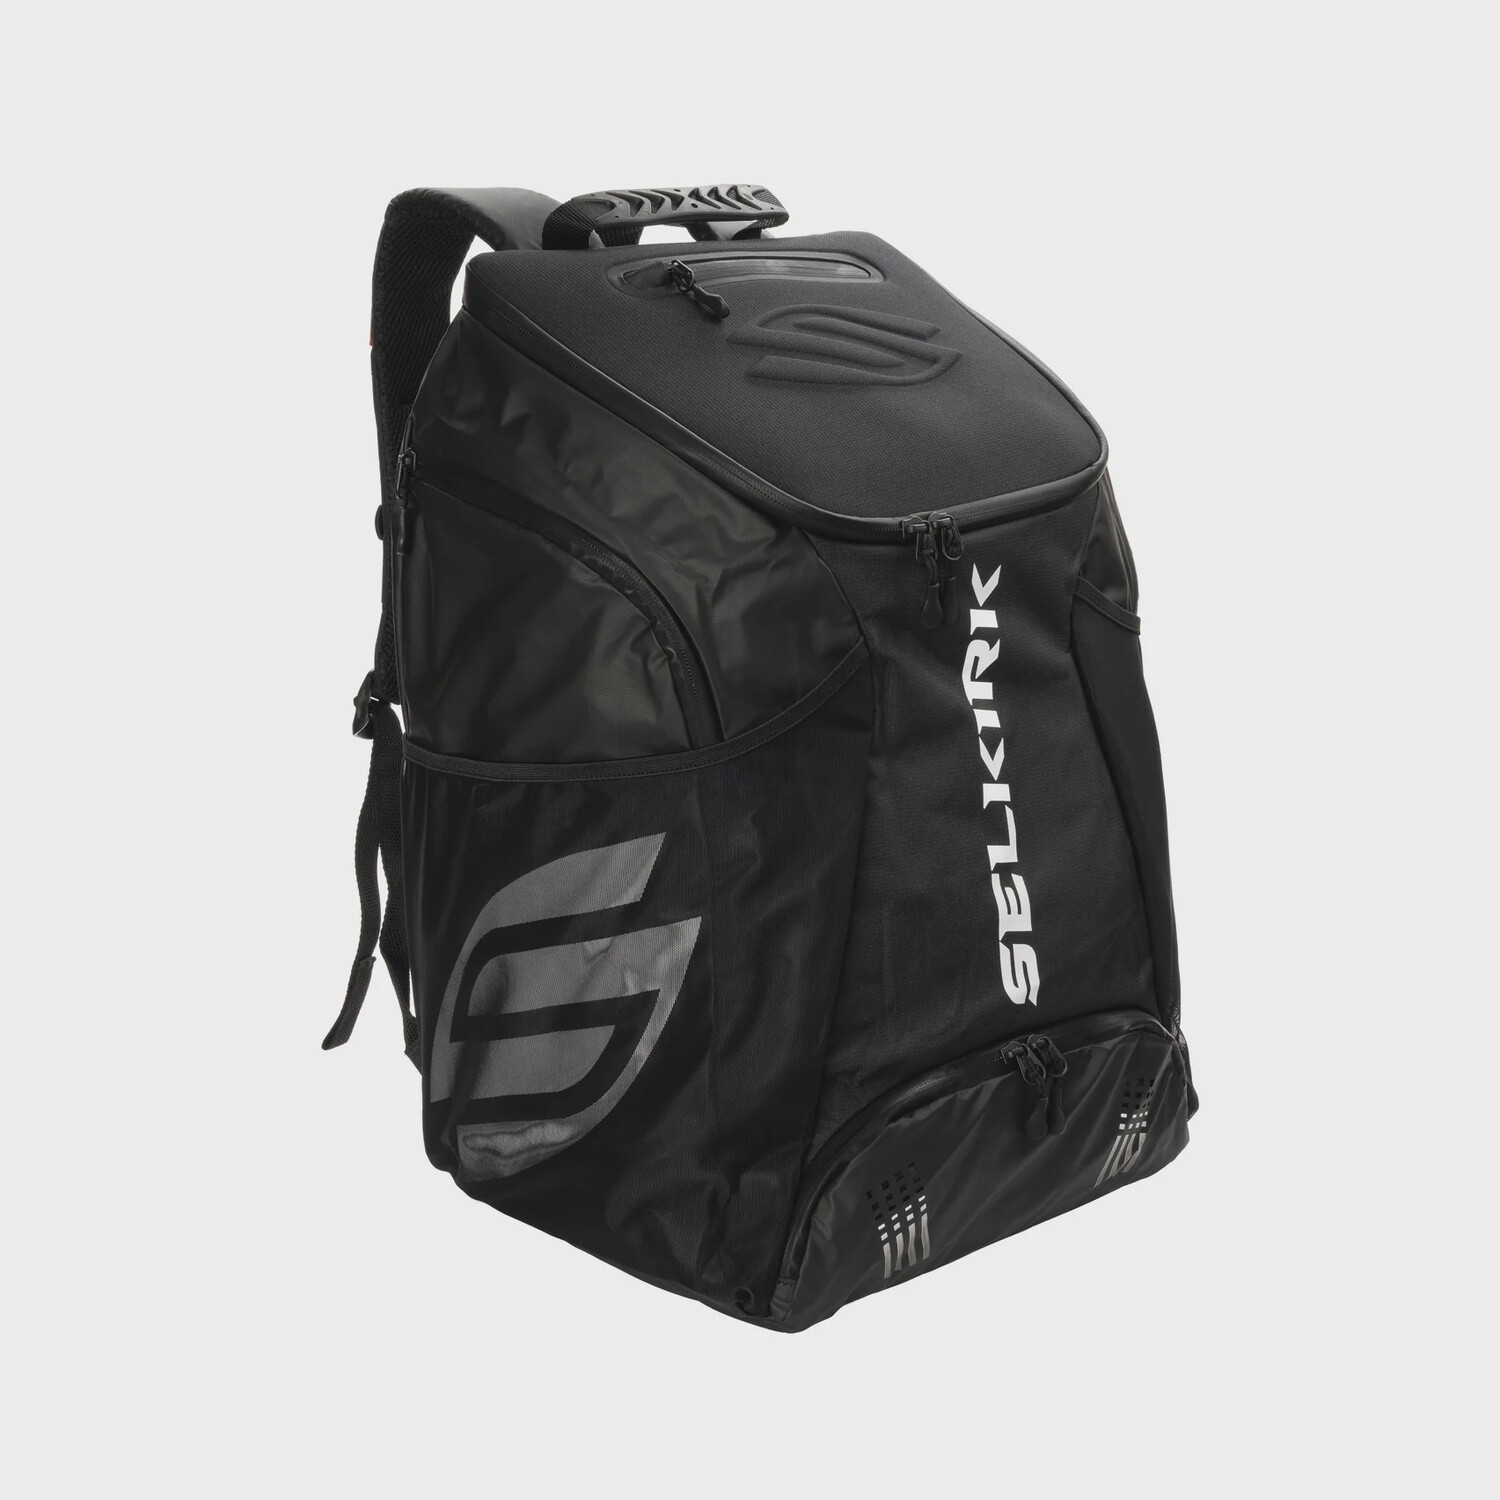 Selkirk Pro Line Tour Backpack, Color: Black